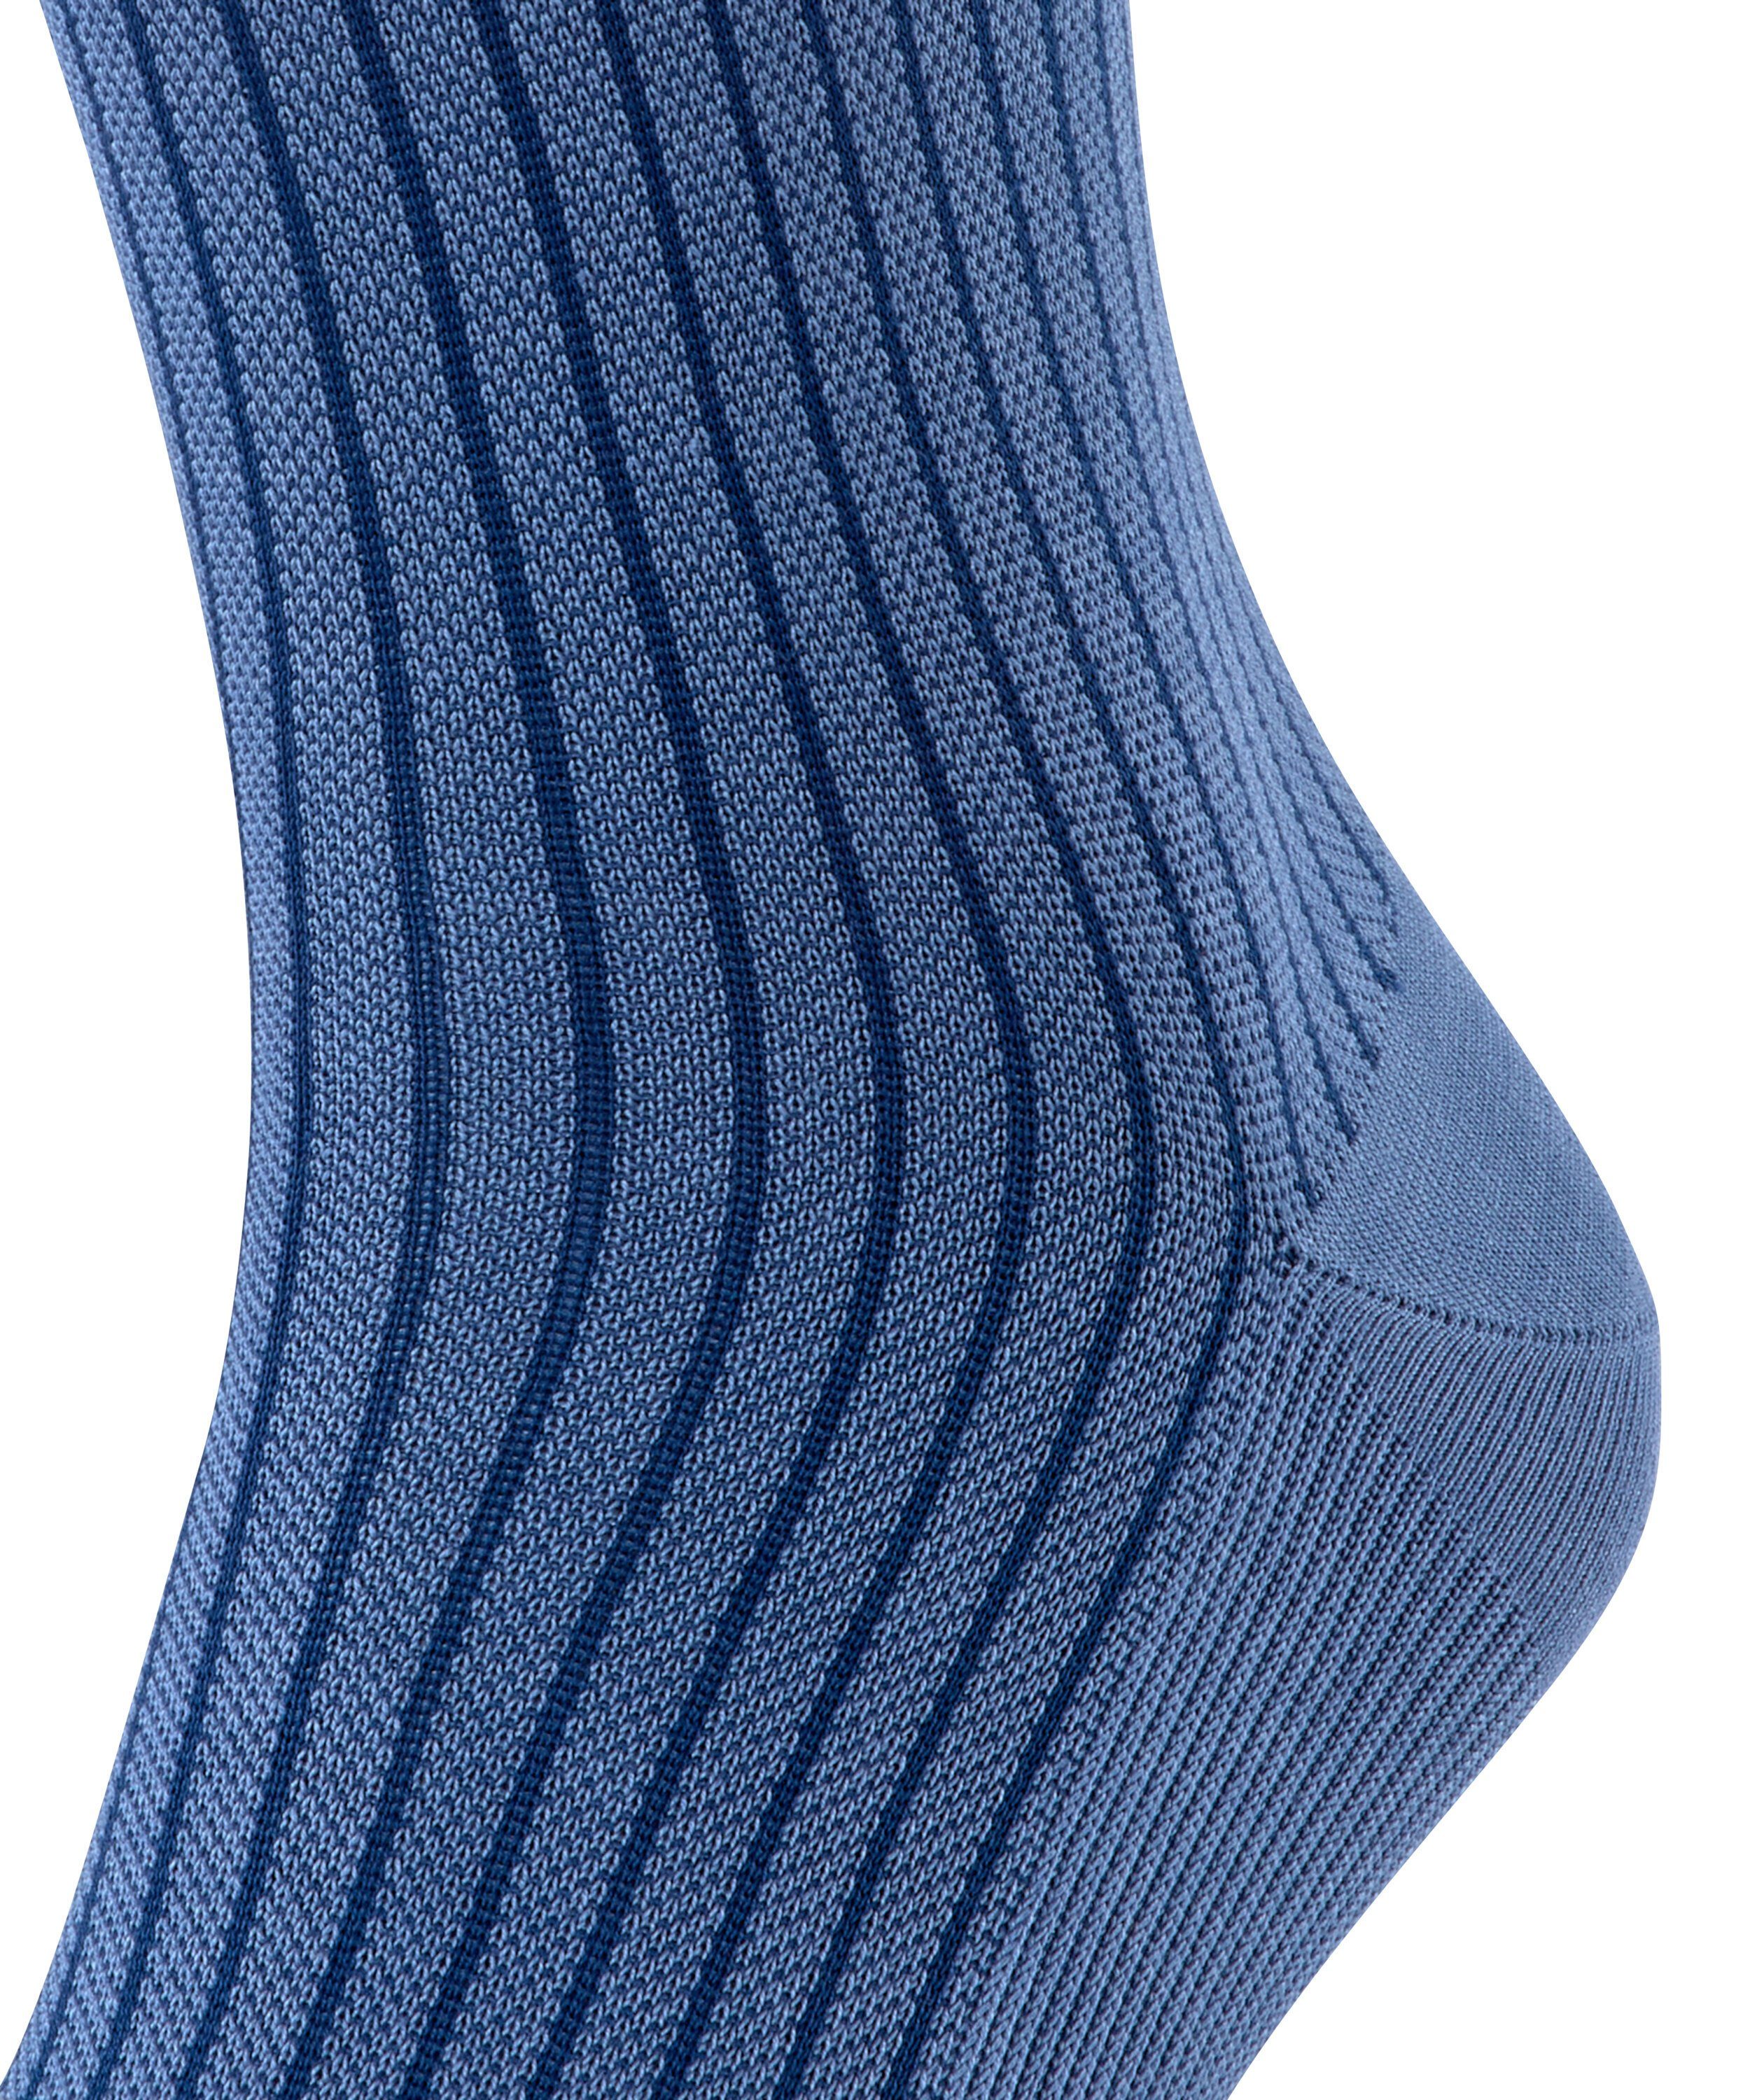 FALKE Socken Oxford (6845) Stripe blue dusty (1-Paar)